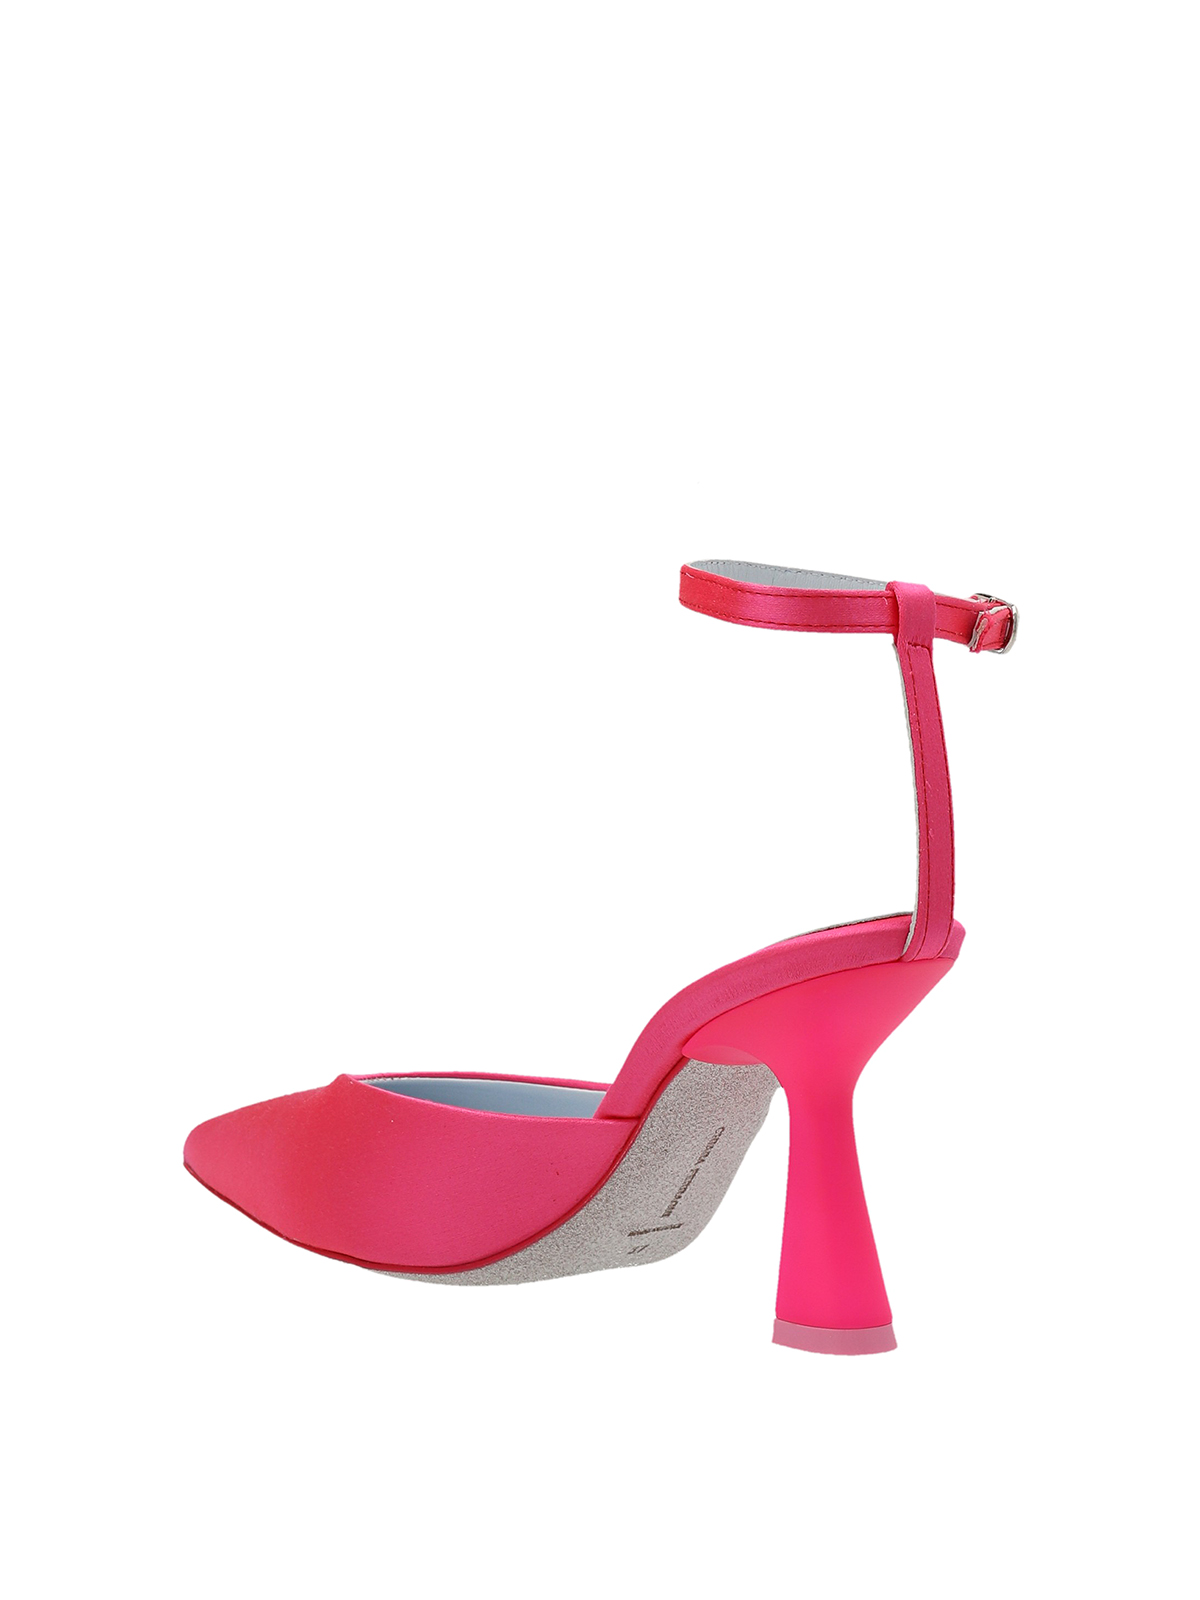 Court shoes Chiara Ferragni - Satin pumps - CF3142012 | iKRIX.com